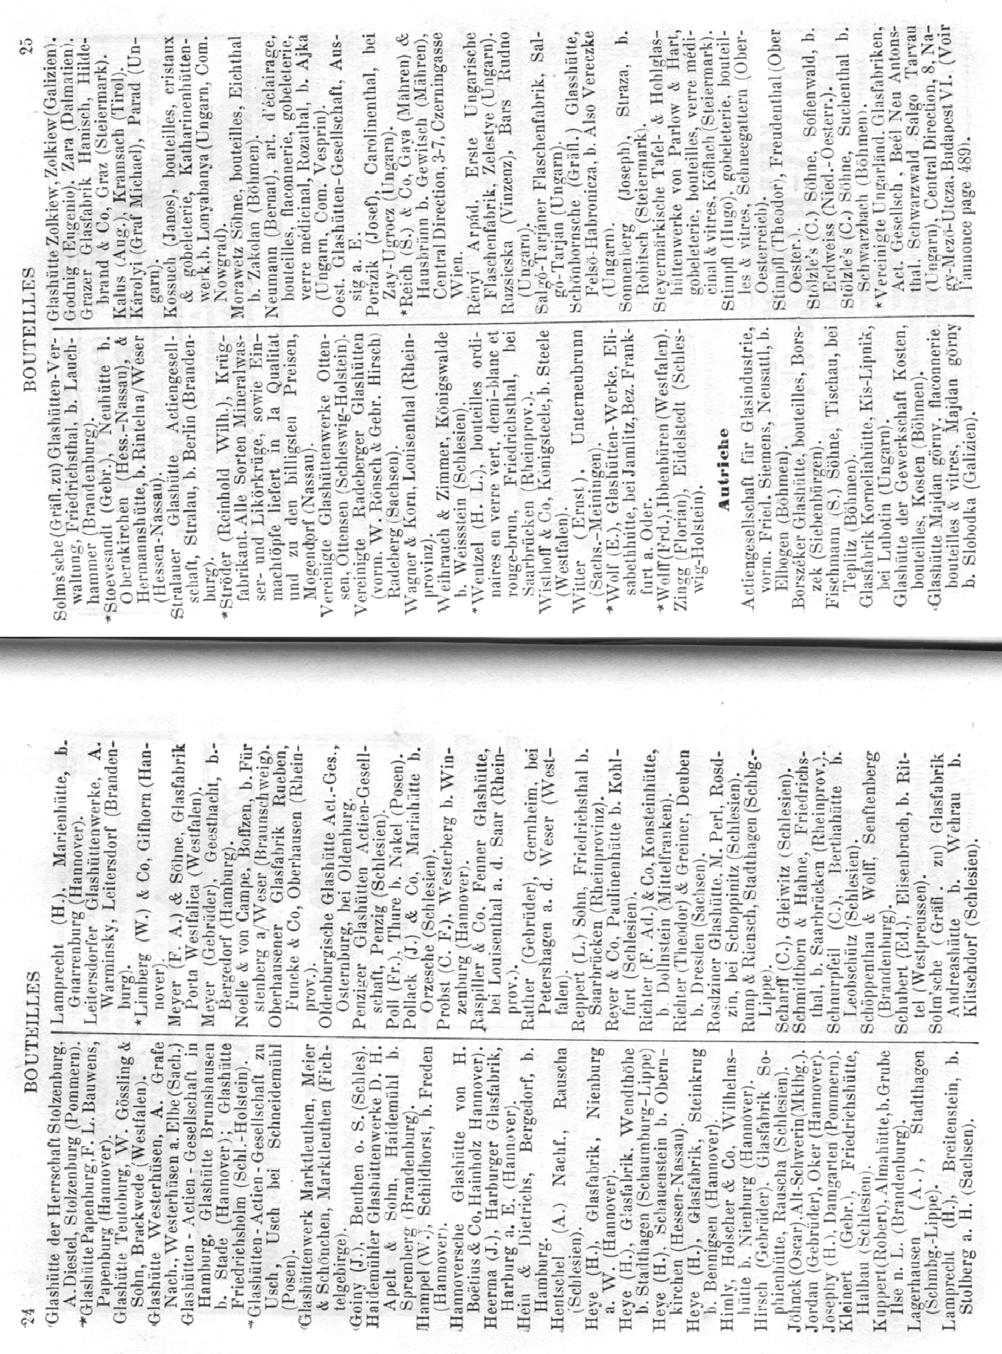 Abb. 2008-1-06/005 Adressbuch Rousset 1898, Seiten 24-25, Flaschen / Flakons